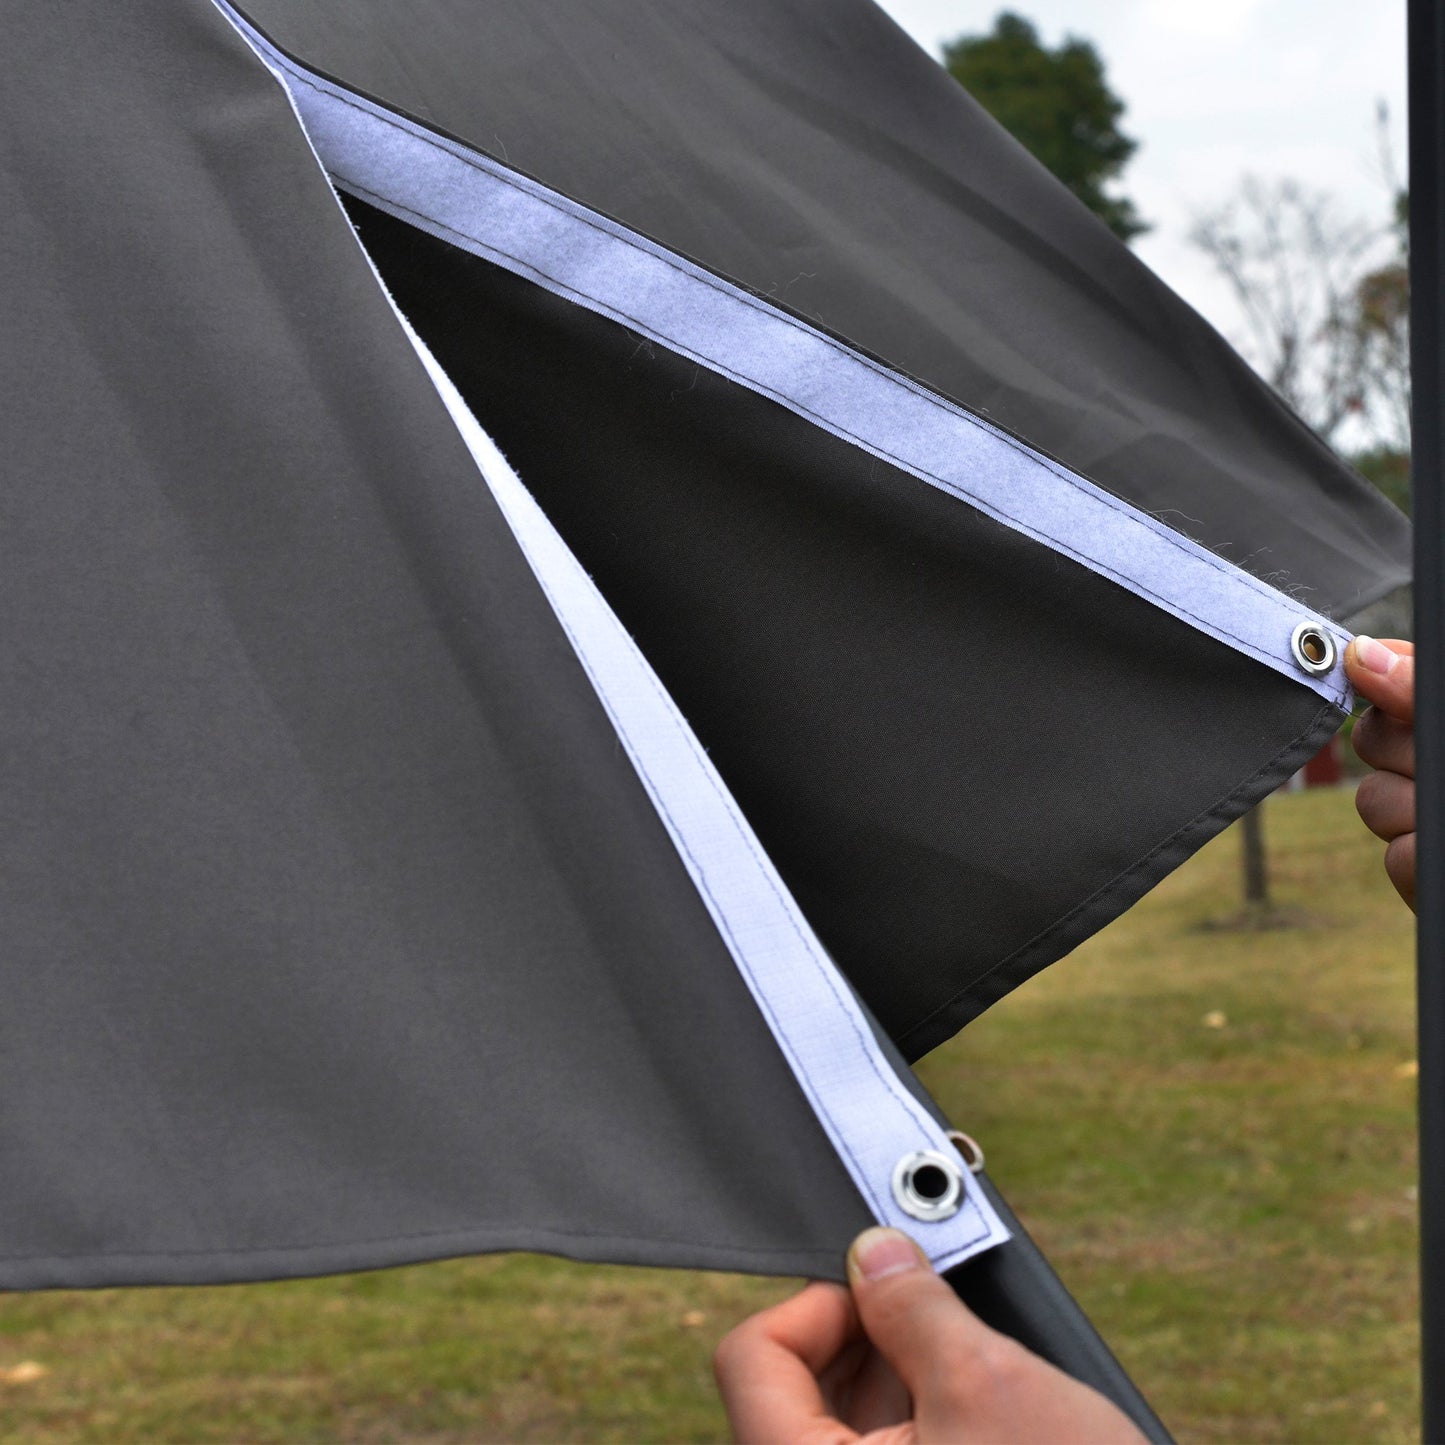 Outsunny 3(m) LED Cantilever Parasol Outdoor Sun Umbrella w/ Base Solar Lights Grey